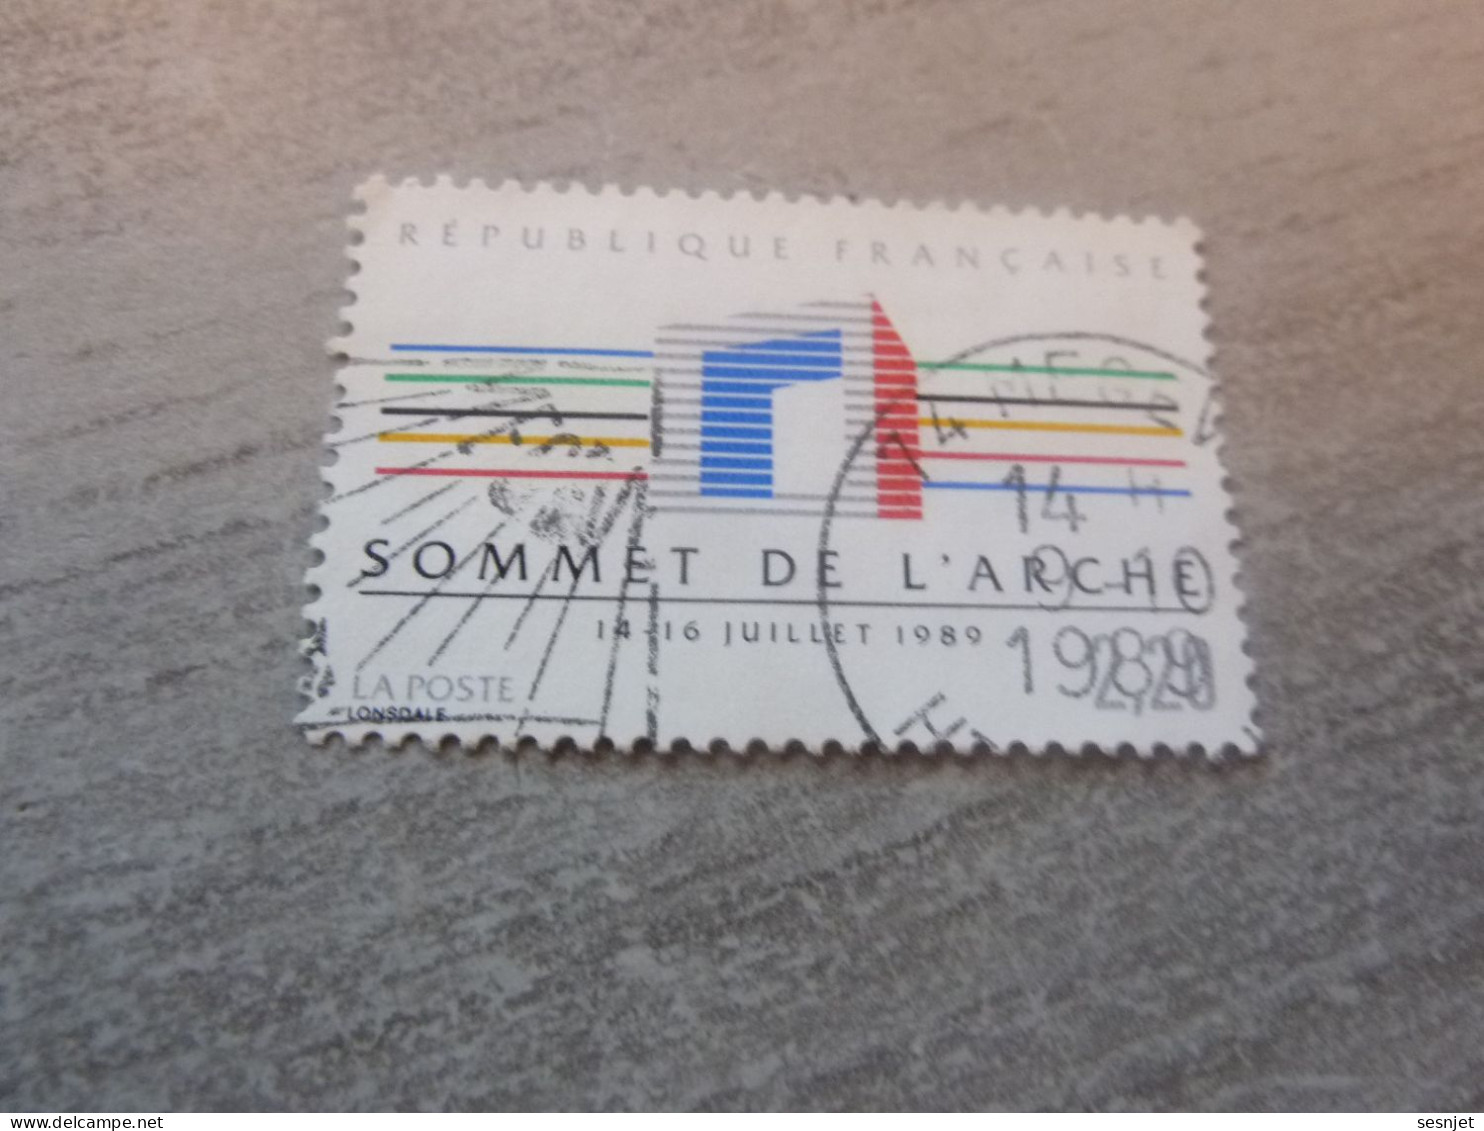 Paris - Sommet Des Pays Industrialisés - 2f.20 - Yt 2600 - Multicolore - Oblitéré - Année 1989 - - Usados